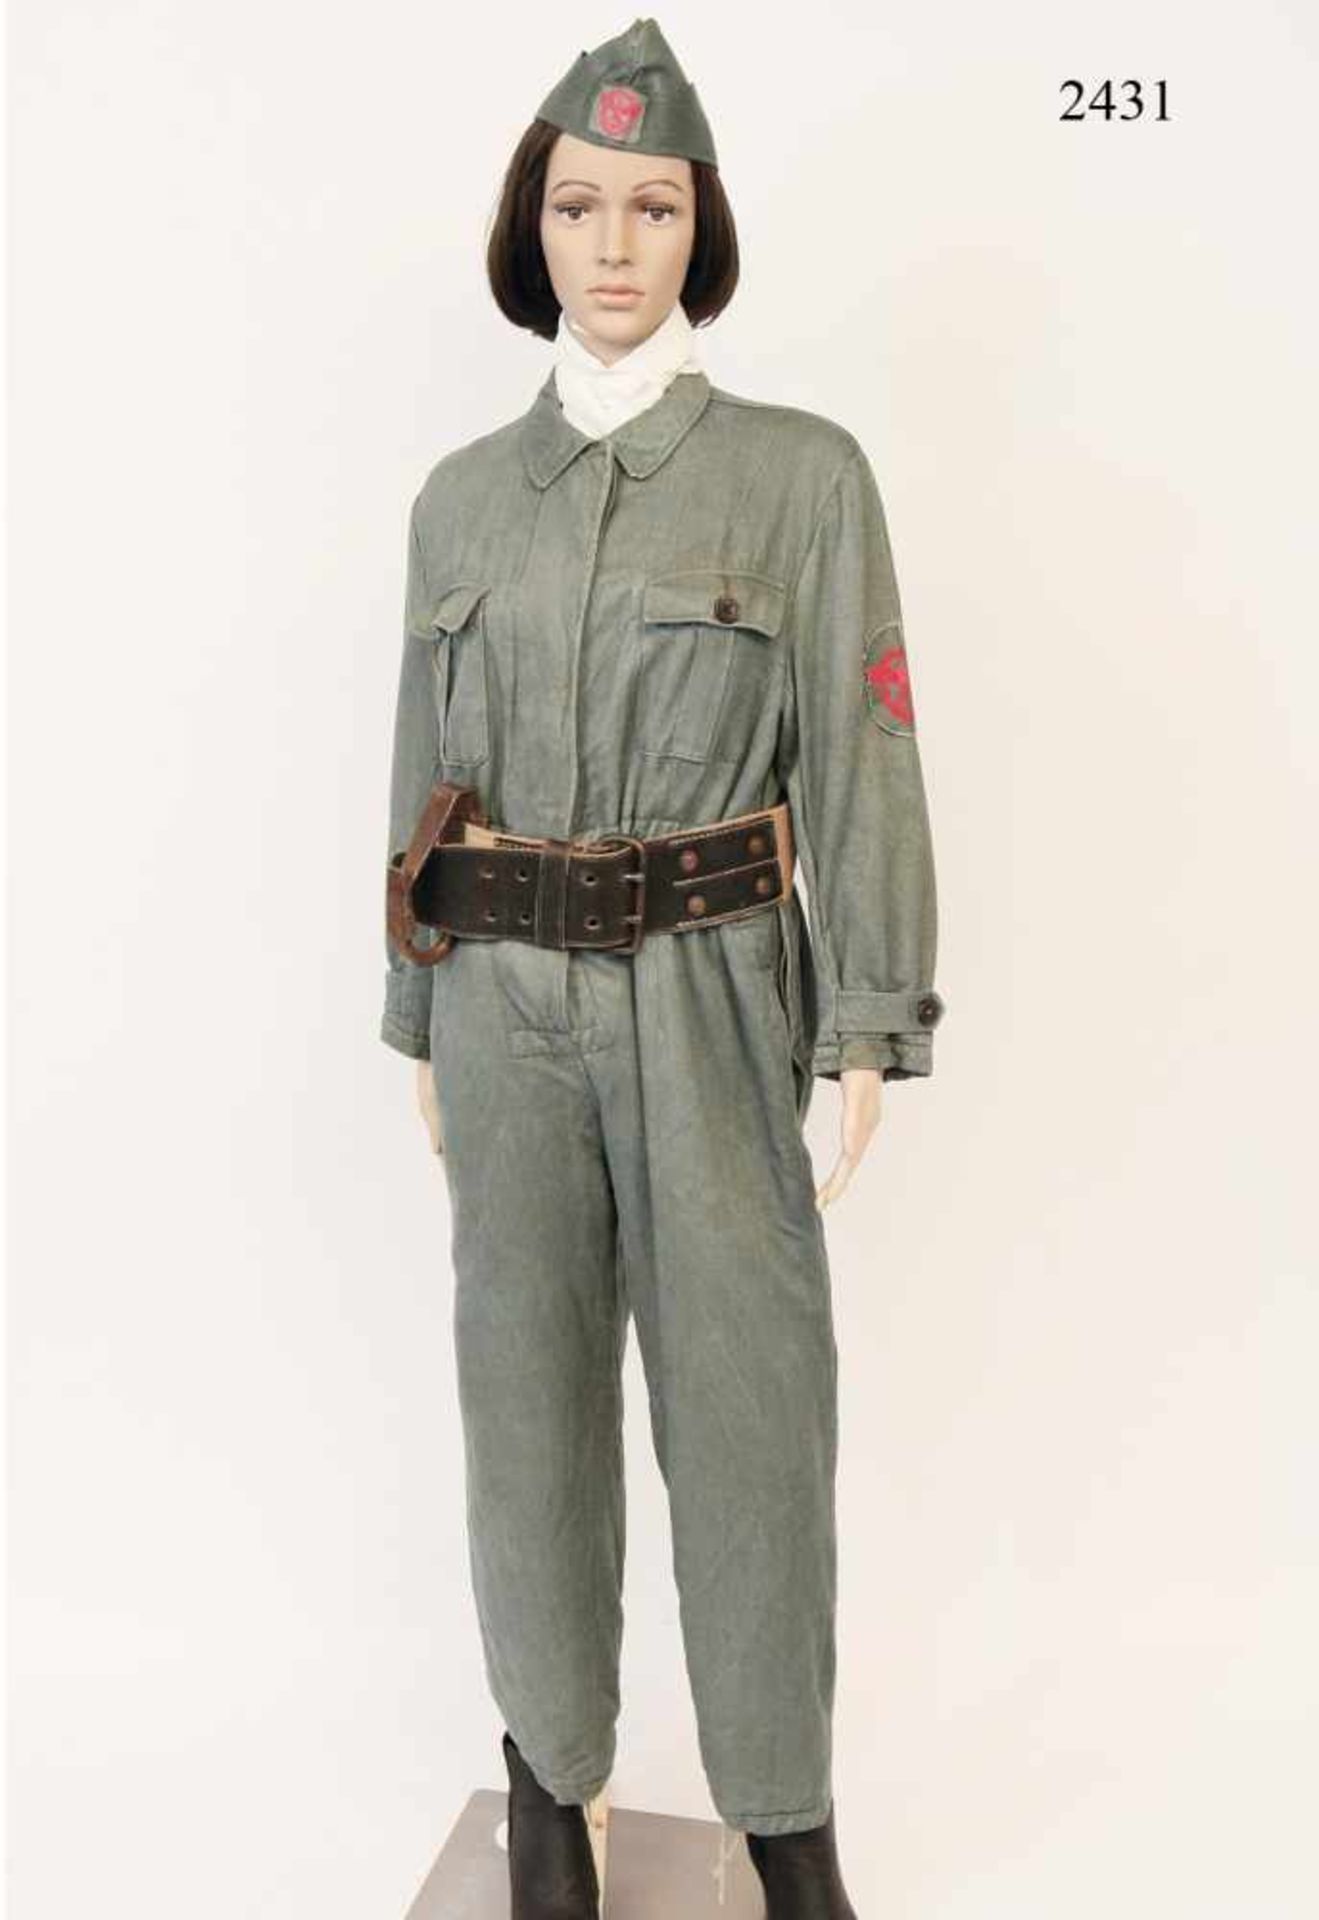 Einsatzbekleidung für Feuerwehr-Helferinnen, ab 1943Schilfgrüner Schutzanzug. 2 Brusttaschen. Am Arm